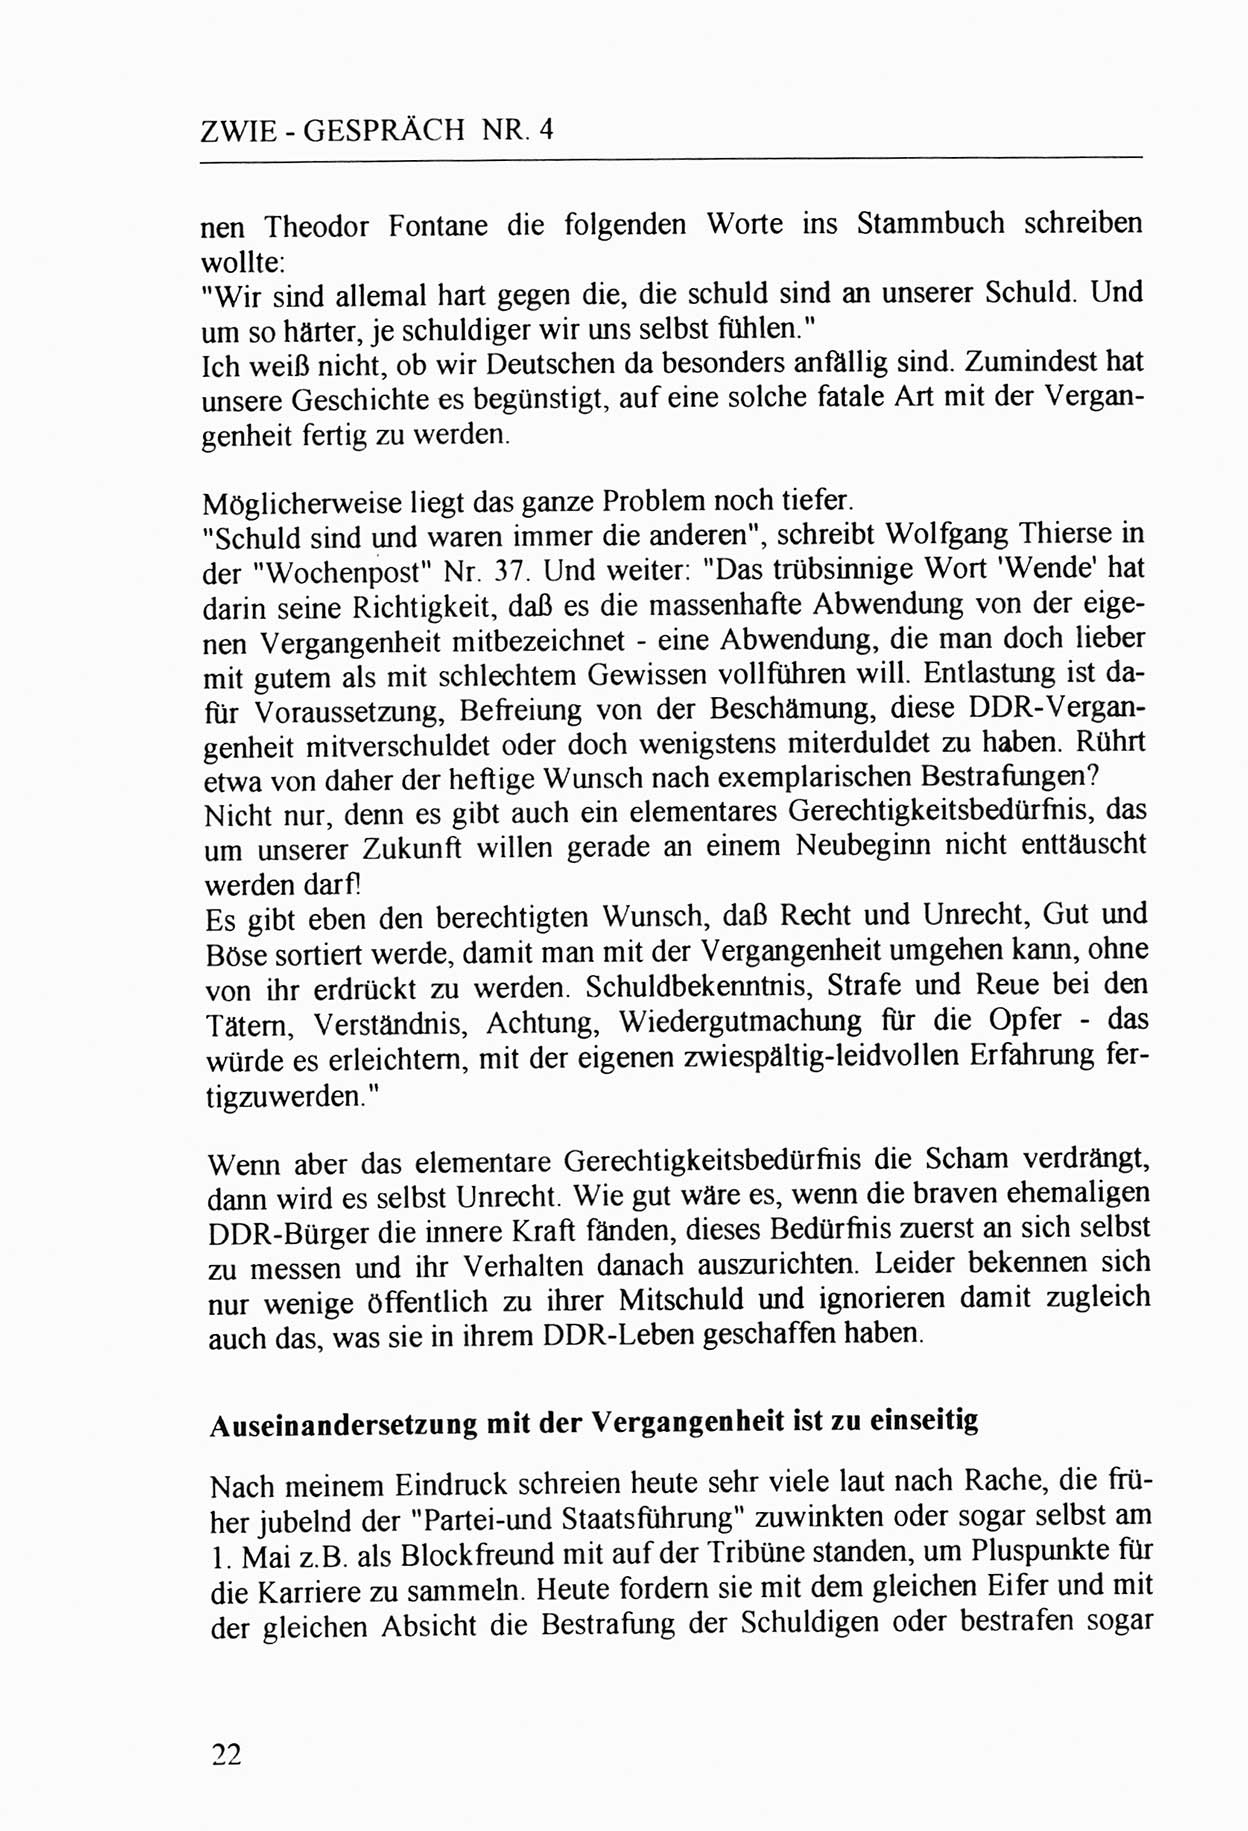 Zwie-Gespräch, Beiträge zur Aufarbeitung der Stasi-Vergangenheit [Deutsche Demokratische Republik (DDR)], Ausgabe Nr. 4, Berlin 1991, Seite 22 (Zwie-Gespr. Ausg. 4 1991, S. 22)